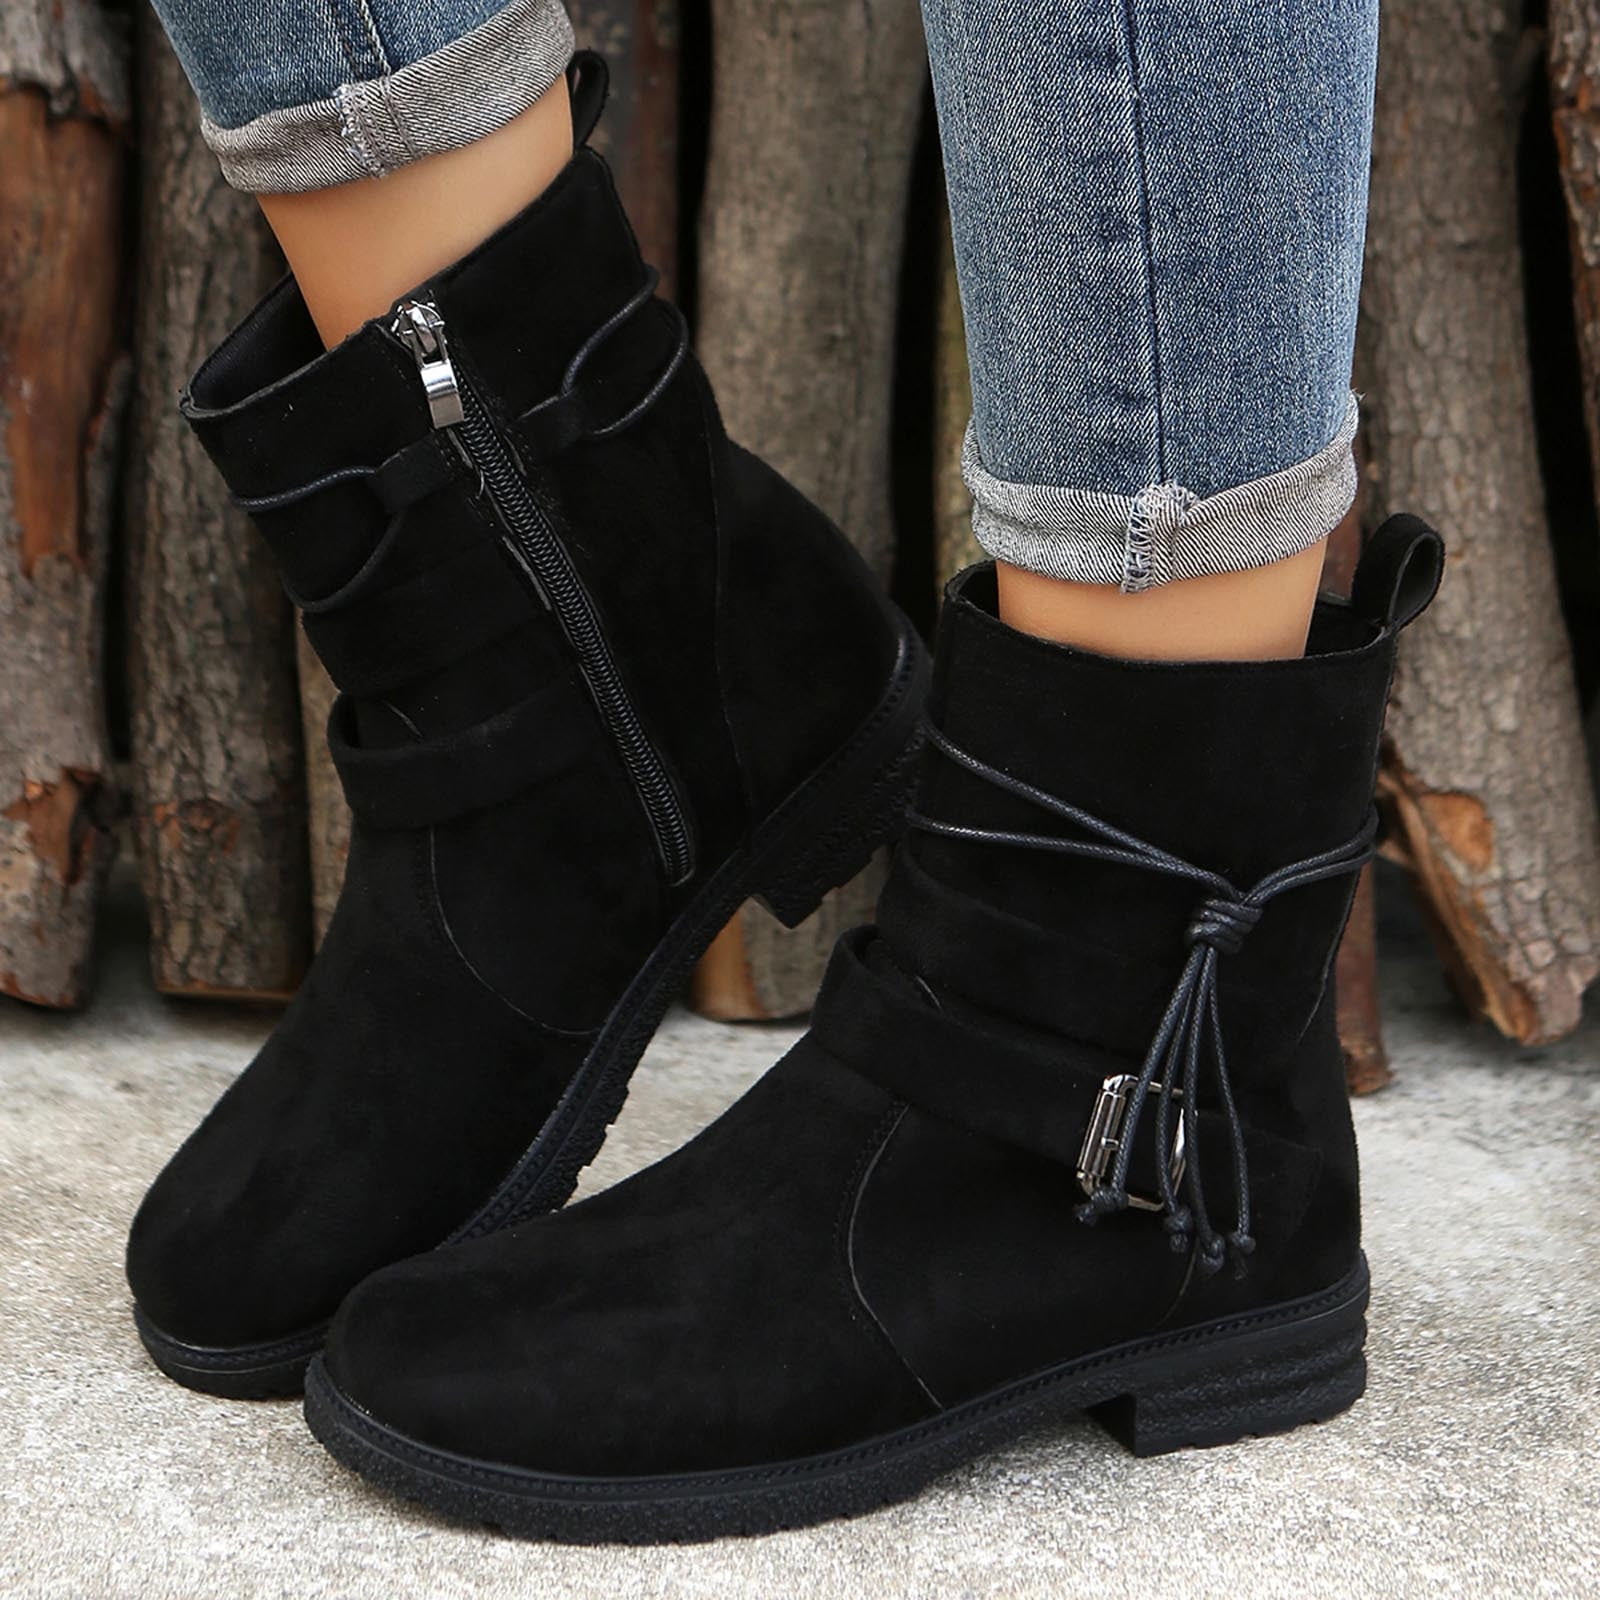 Afrekenen landbouw Weggooien HAOTAGS Women's Low Heel Ankle Boots Flat Womens Dressy Shoes Black Size  7.5 - Walmart.com